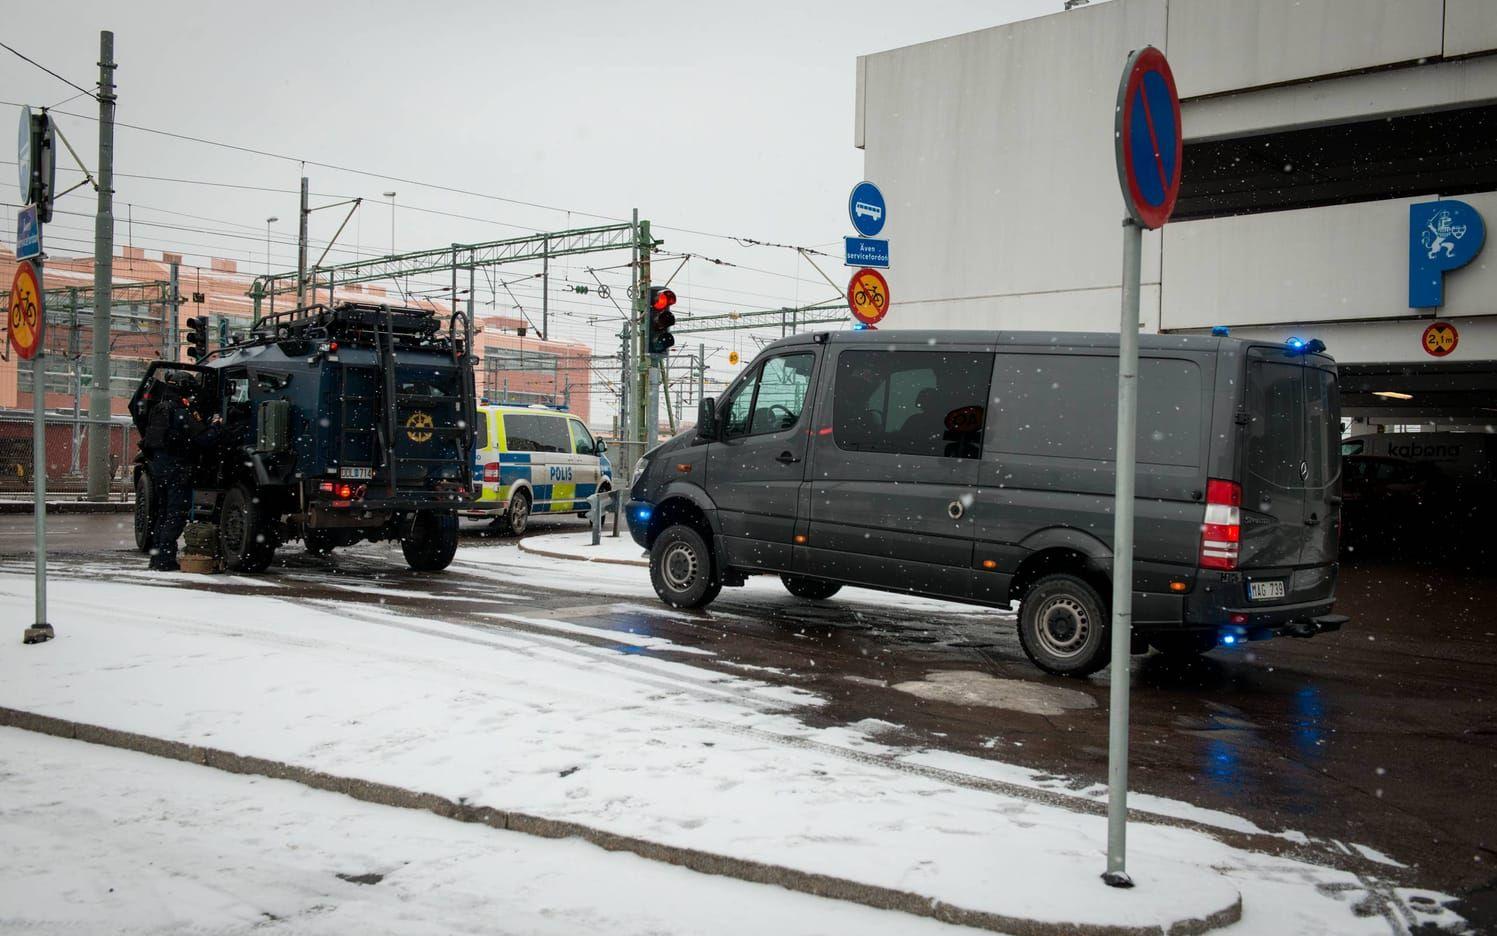 Nationella bombskyddet undersökte tågen i Göteborg och Södertälje utan att hitta något farligt.